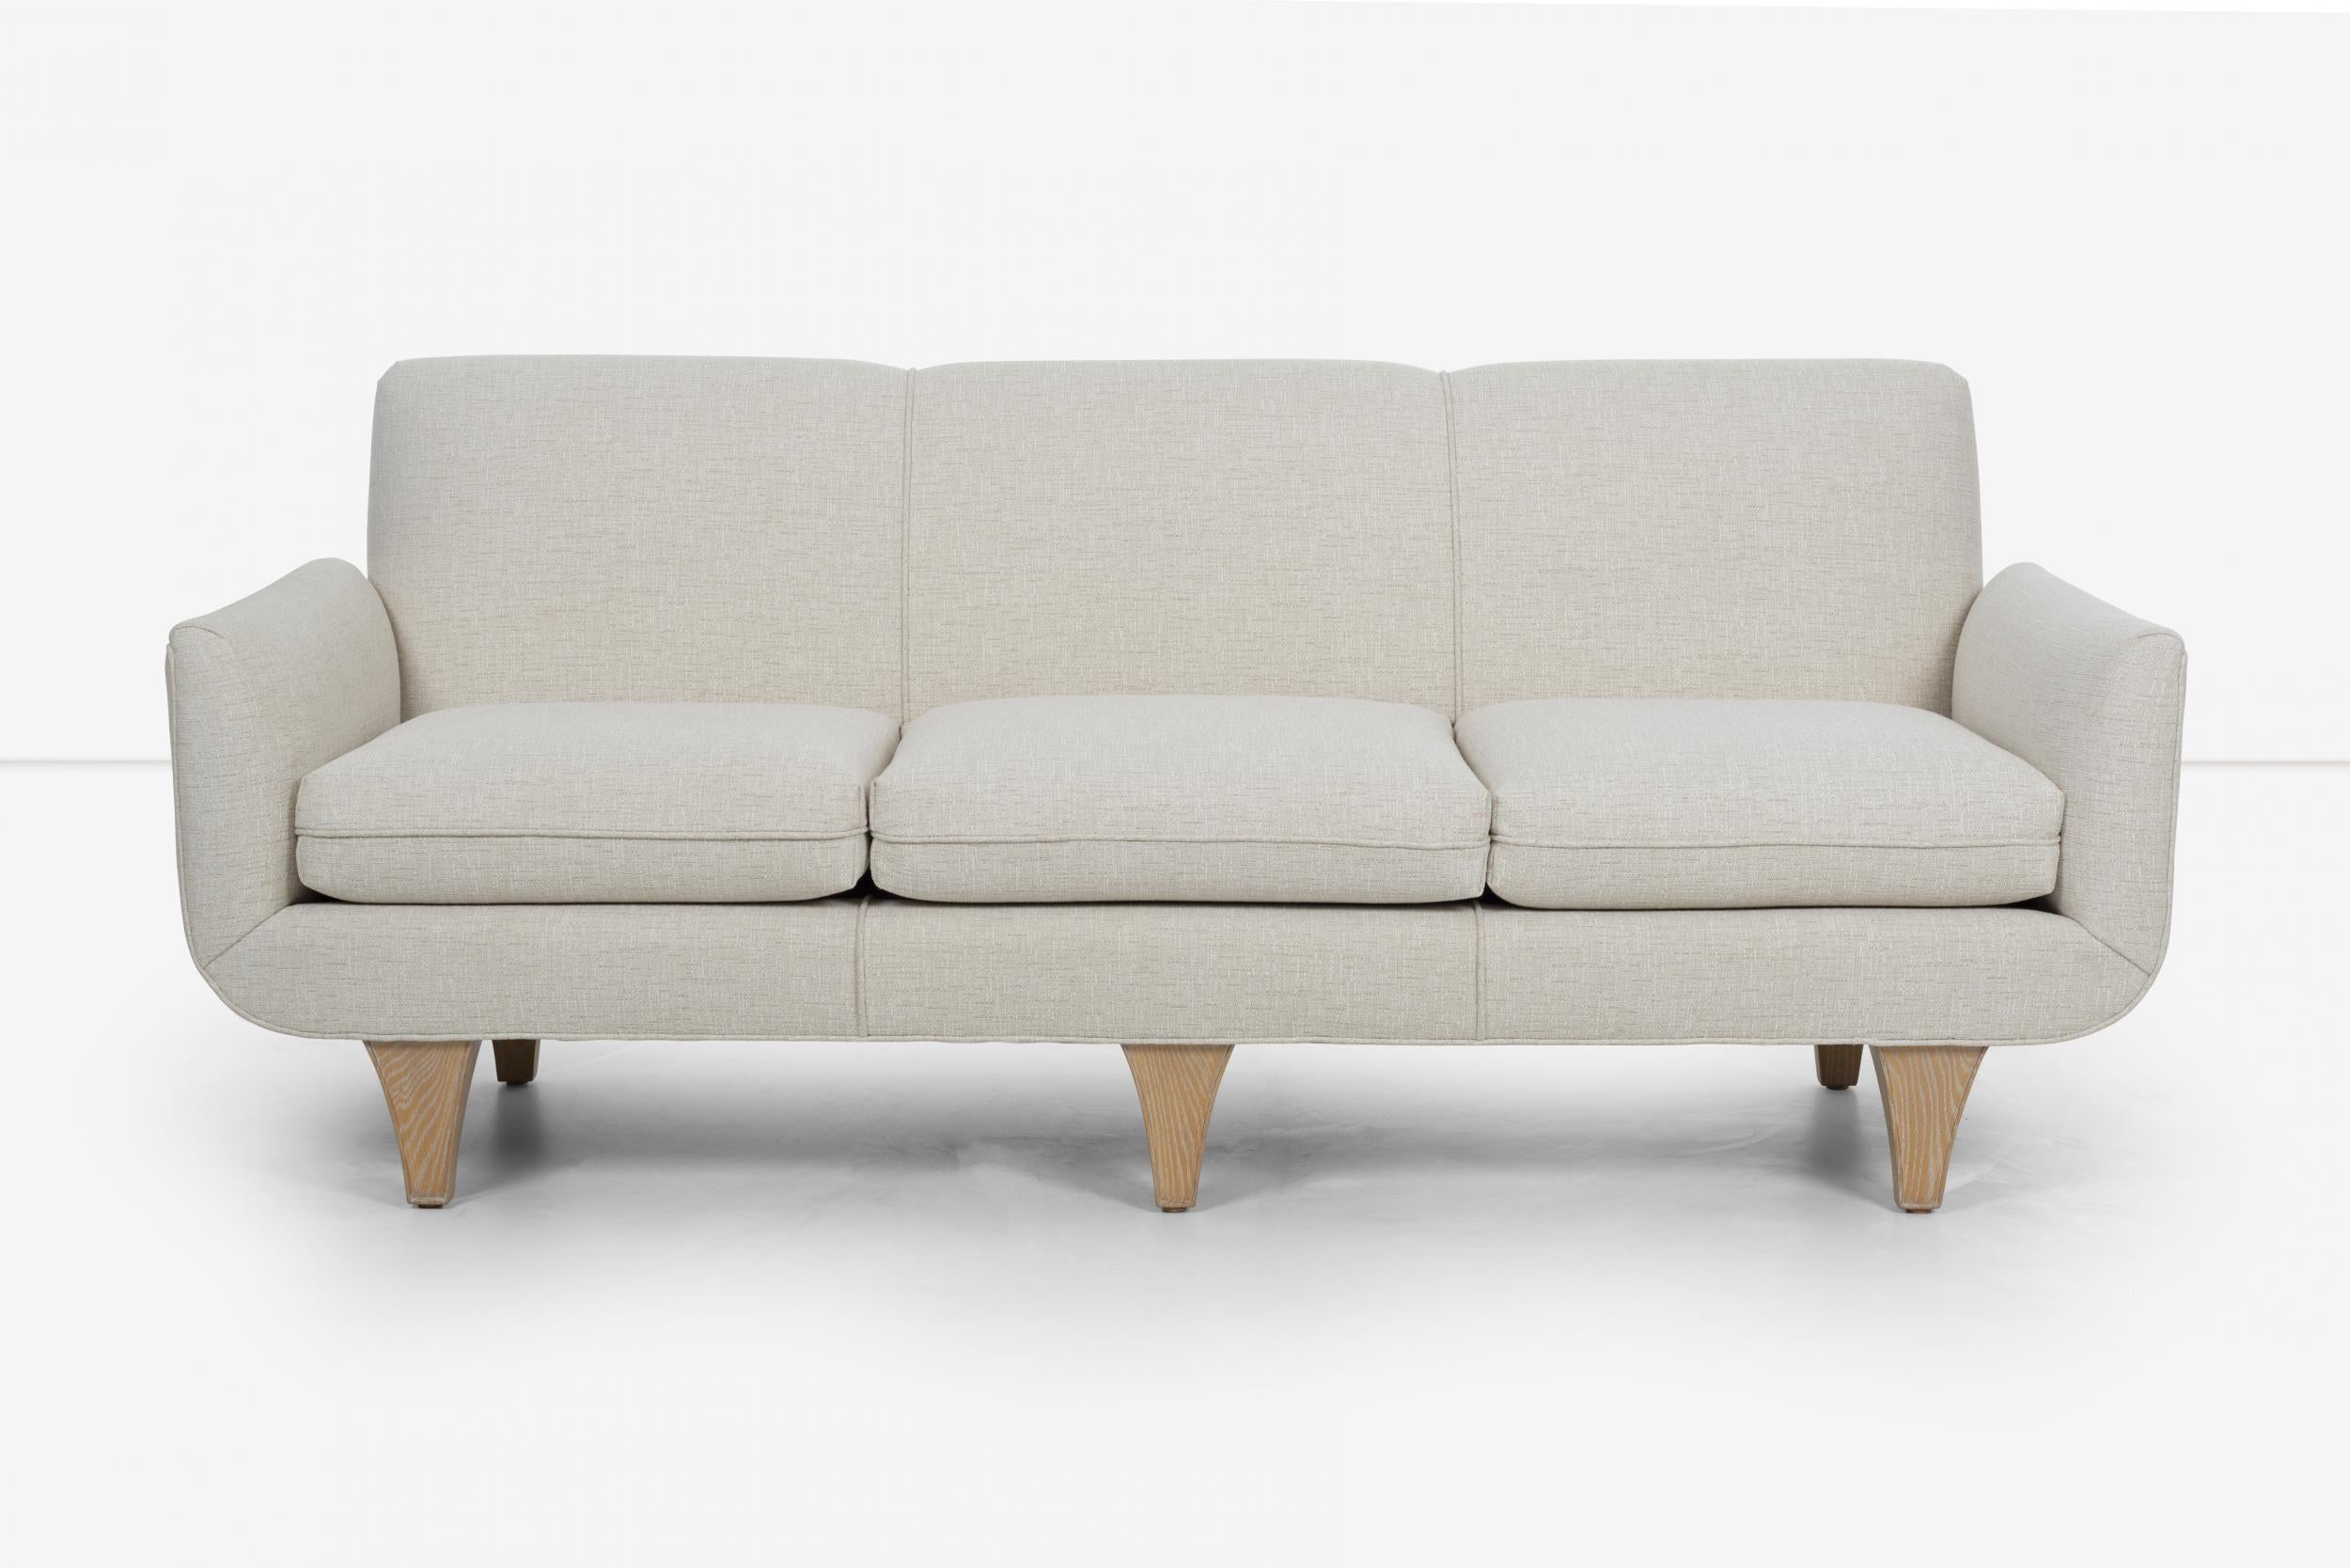 Tommi Parzinger Sofa für Parzinger Originals, massive Beine aus Eiche ceruse, vollständig restauriert und neu gepolstert mit großer unifarbener Baumwolle-Polyester.